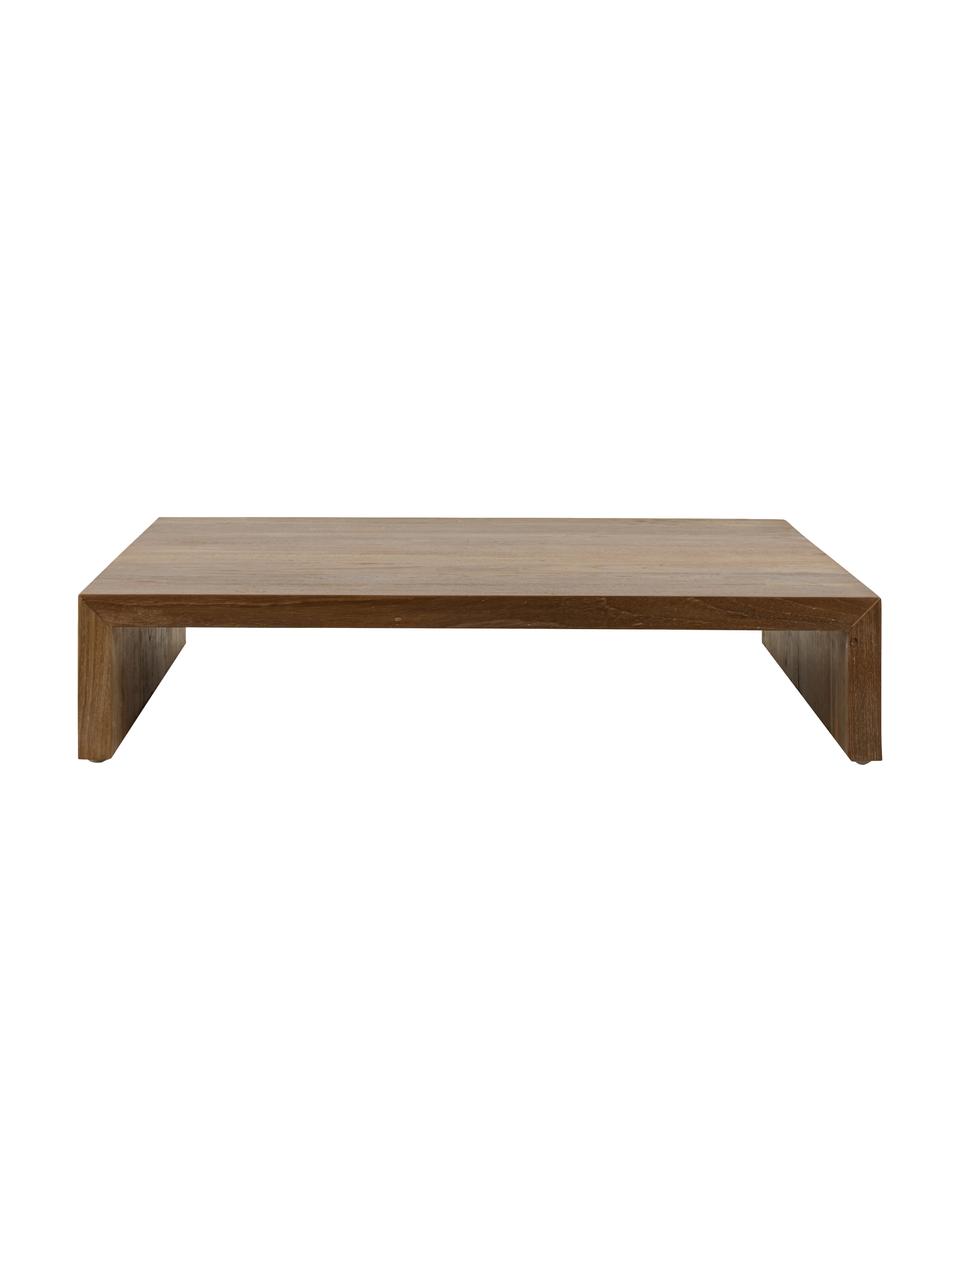 Konferenční stolek ze dřeva sungkai Plateau, Dřevo sungkai

Vzhledem k tomu, že se jedná o přírodní materiály, může se výrobek lišit od vyobrazení. Každý výrobek je jedinečný!, Dřevo sungkai, Š 62 cm, H 53 cm